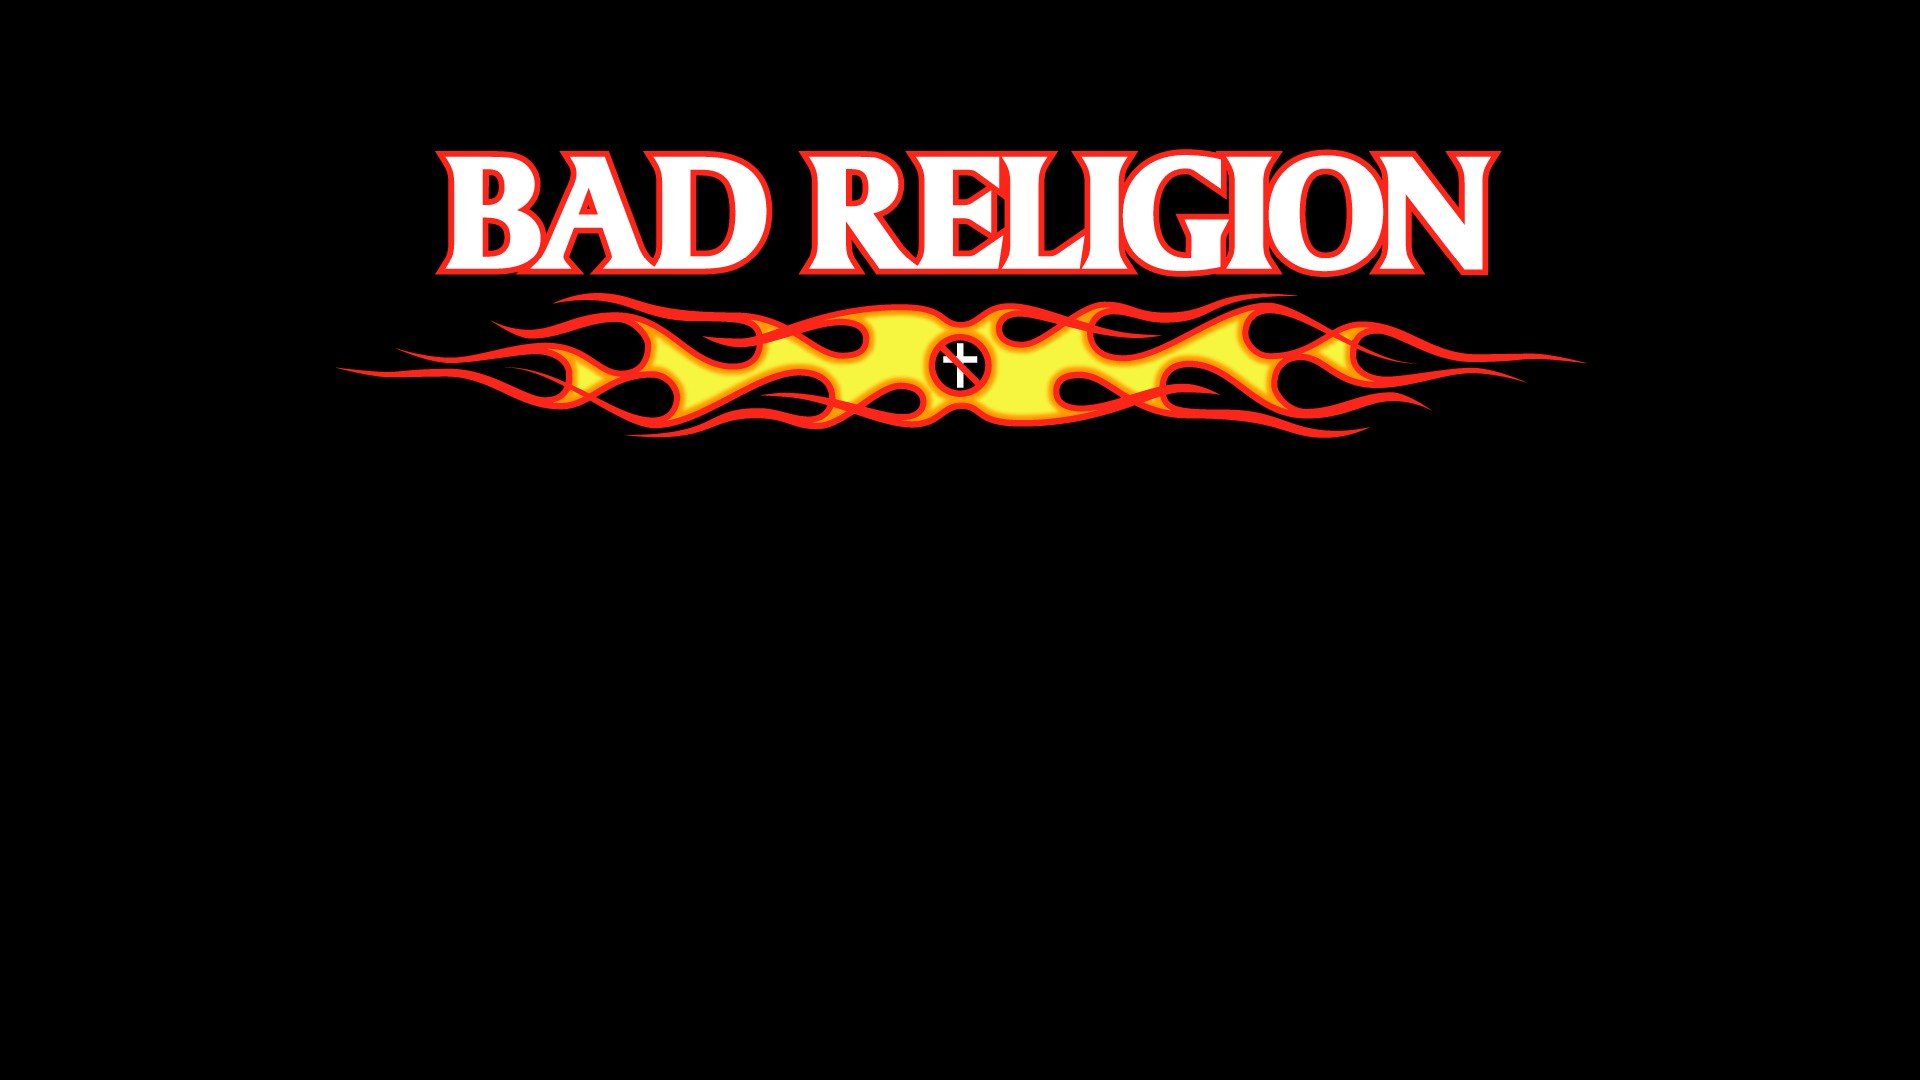 Bad religion wallpaper